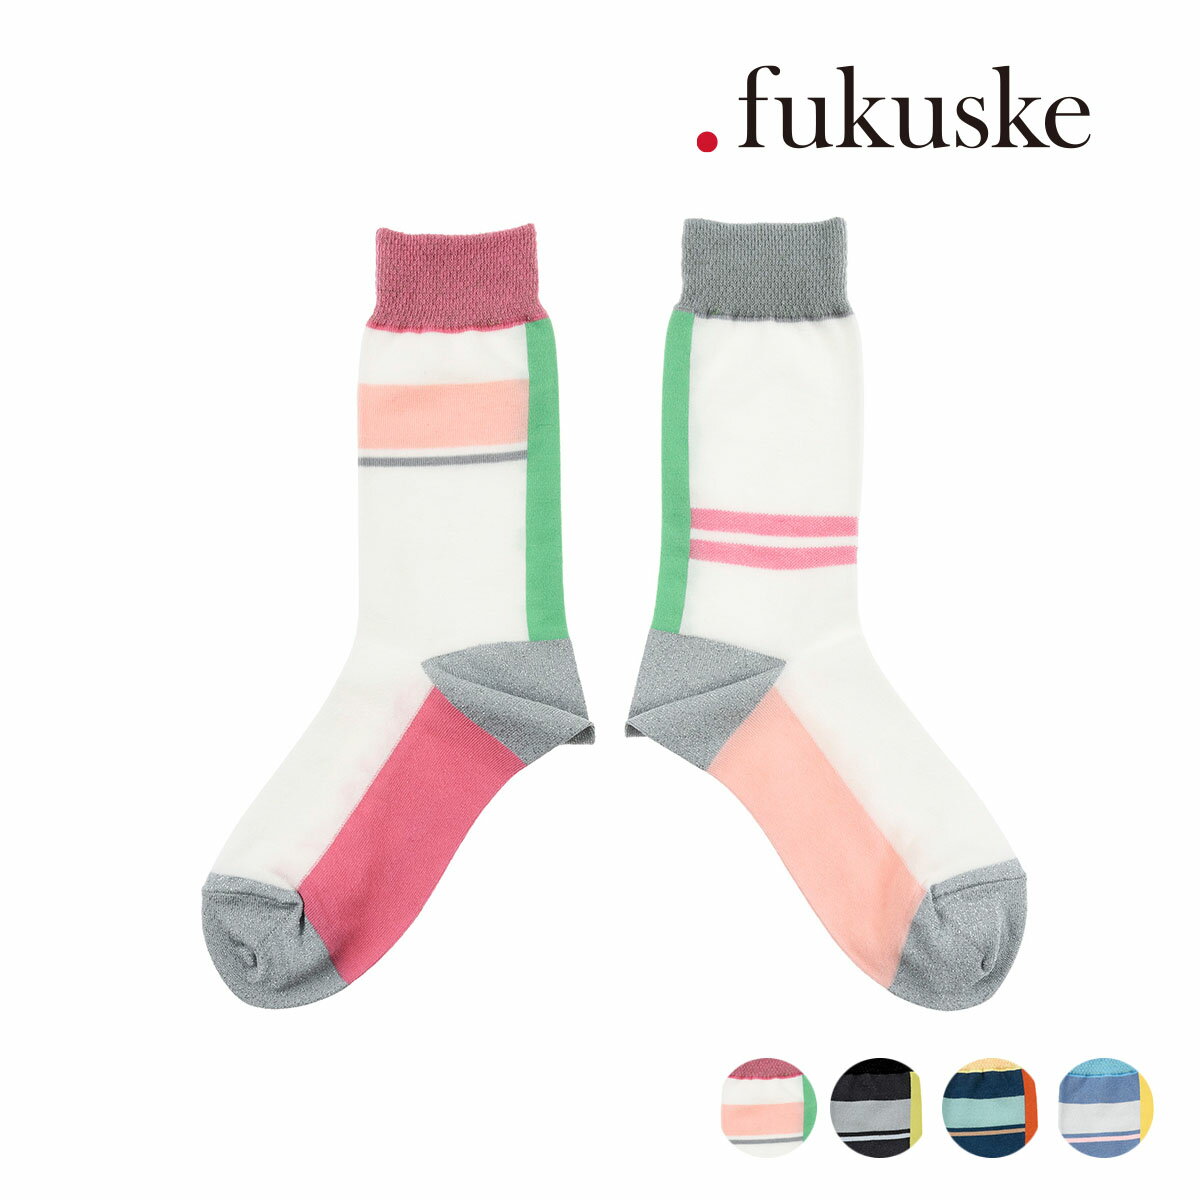 楽天福助 楽天市場店福助 公式 靴下 クルー丈 .fukuske by FUKUMATSU 今日は外国の小説が読みたい 左右柄違い やや薄手 ワイドヒール つま先かかとラメ つま先かかと補強 日本製 00S3F076婦人 女性 フクスケ fukuske